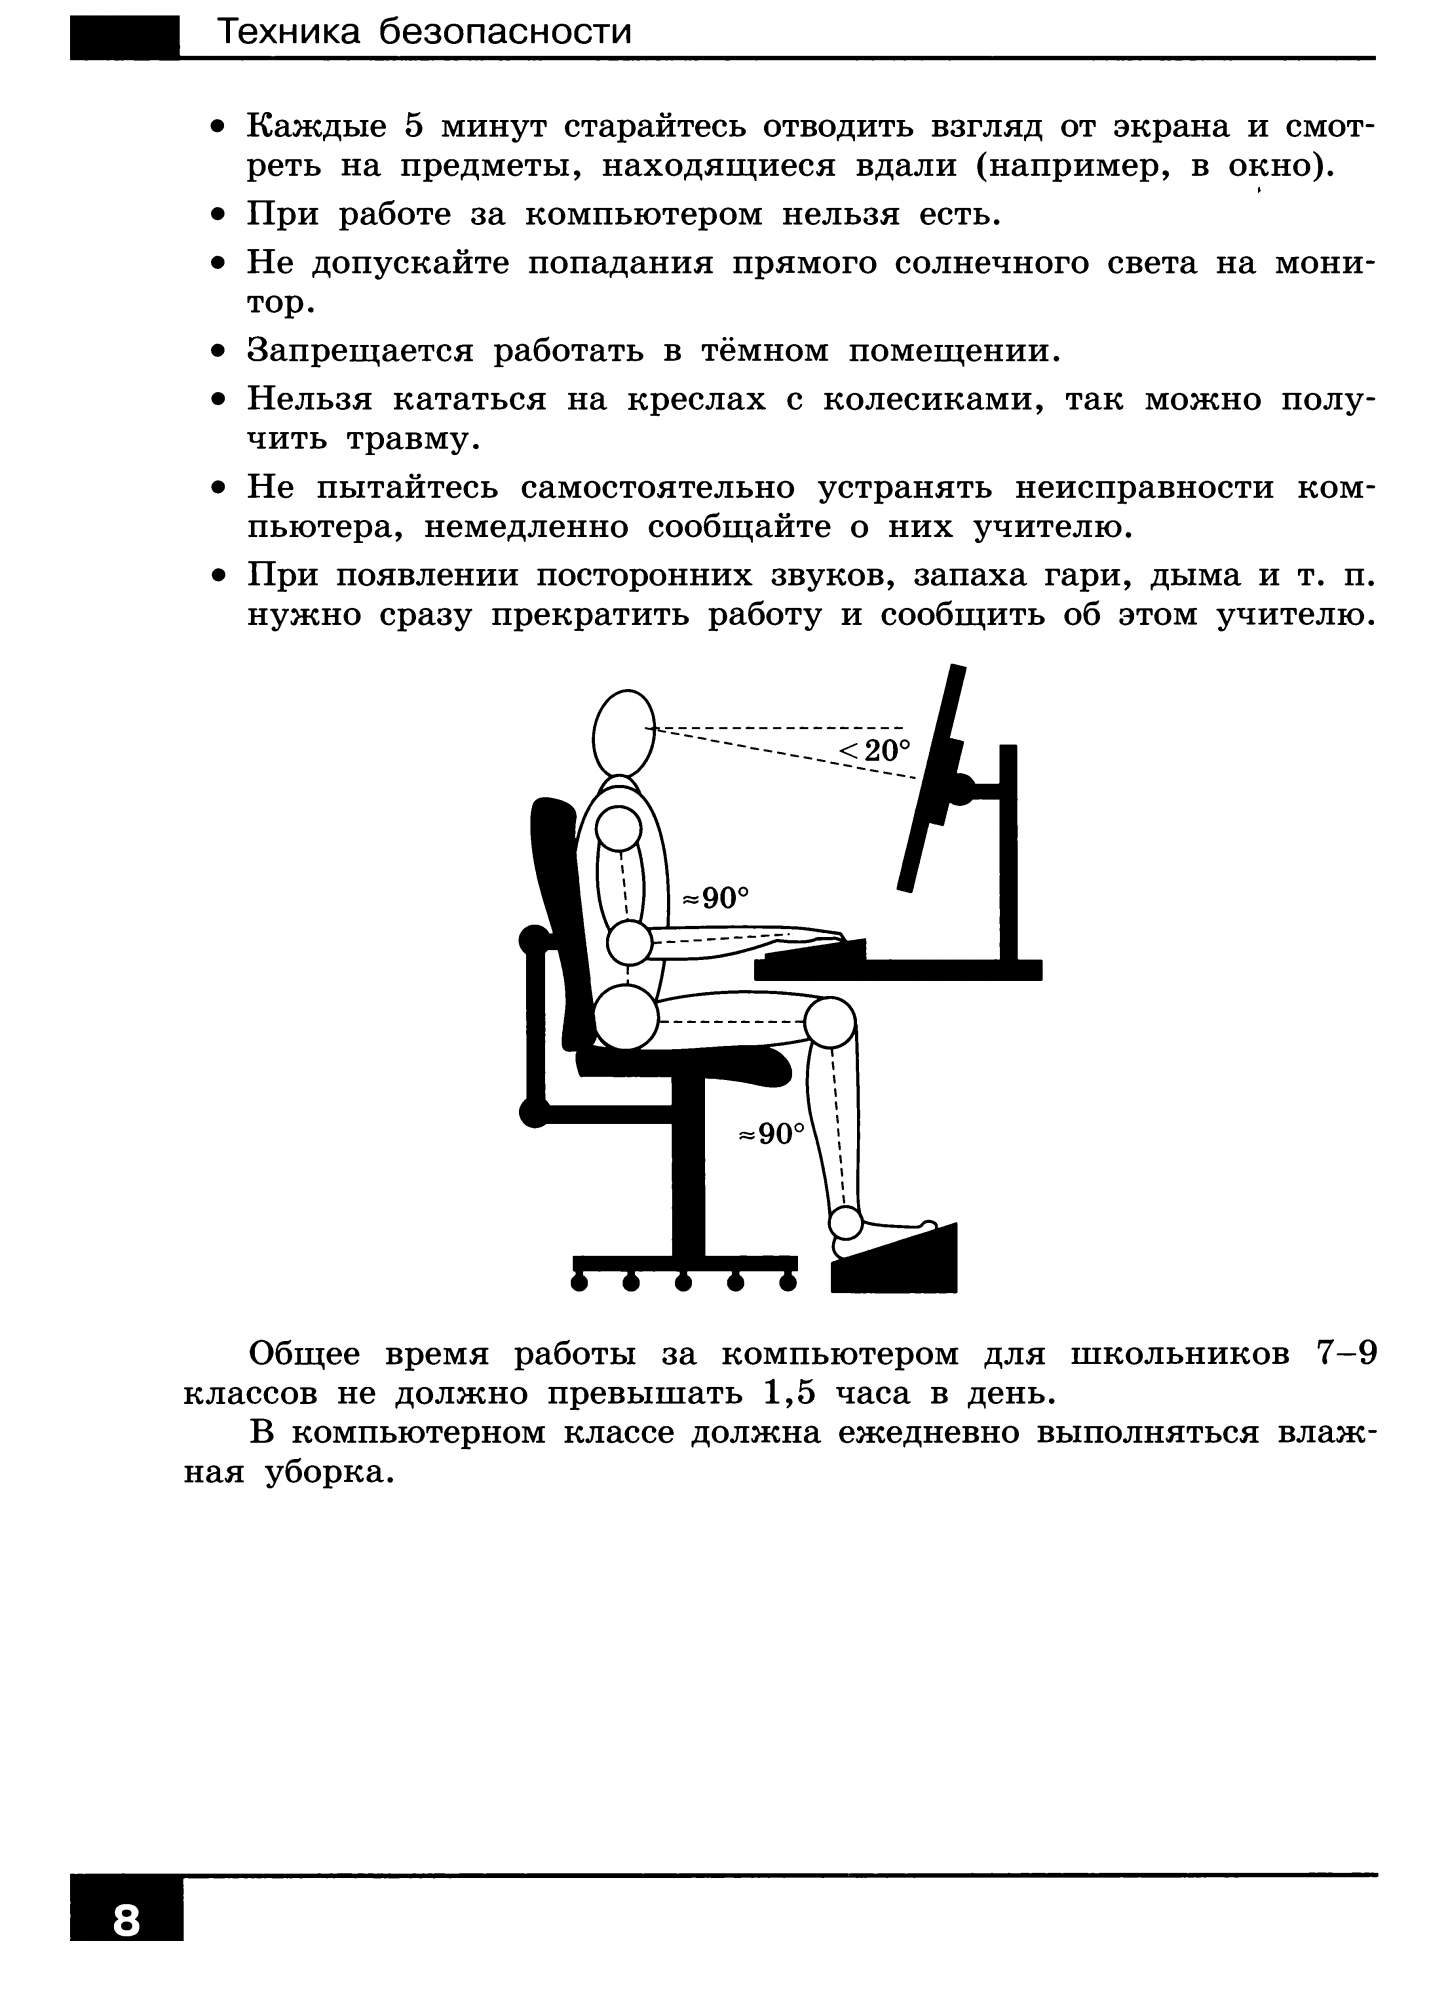 Поляков информатика 7 класс рабочая